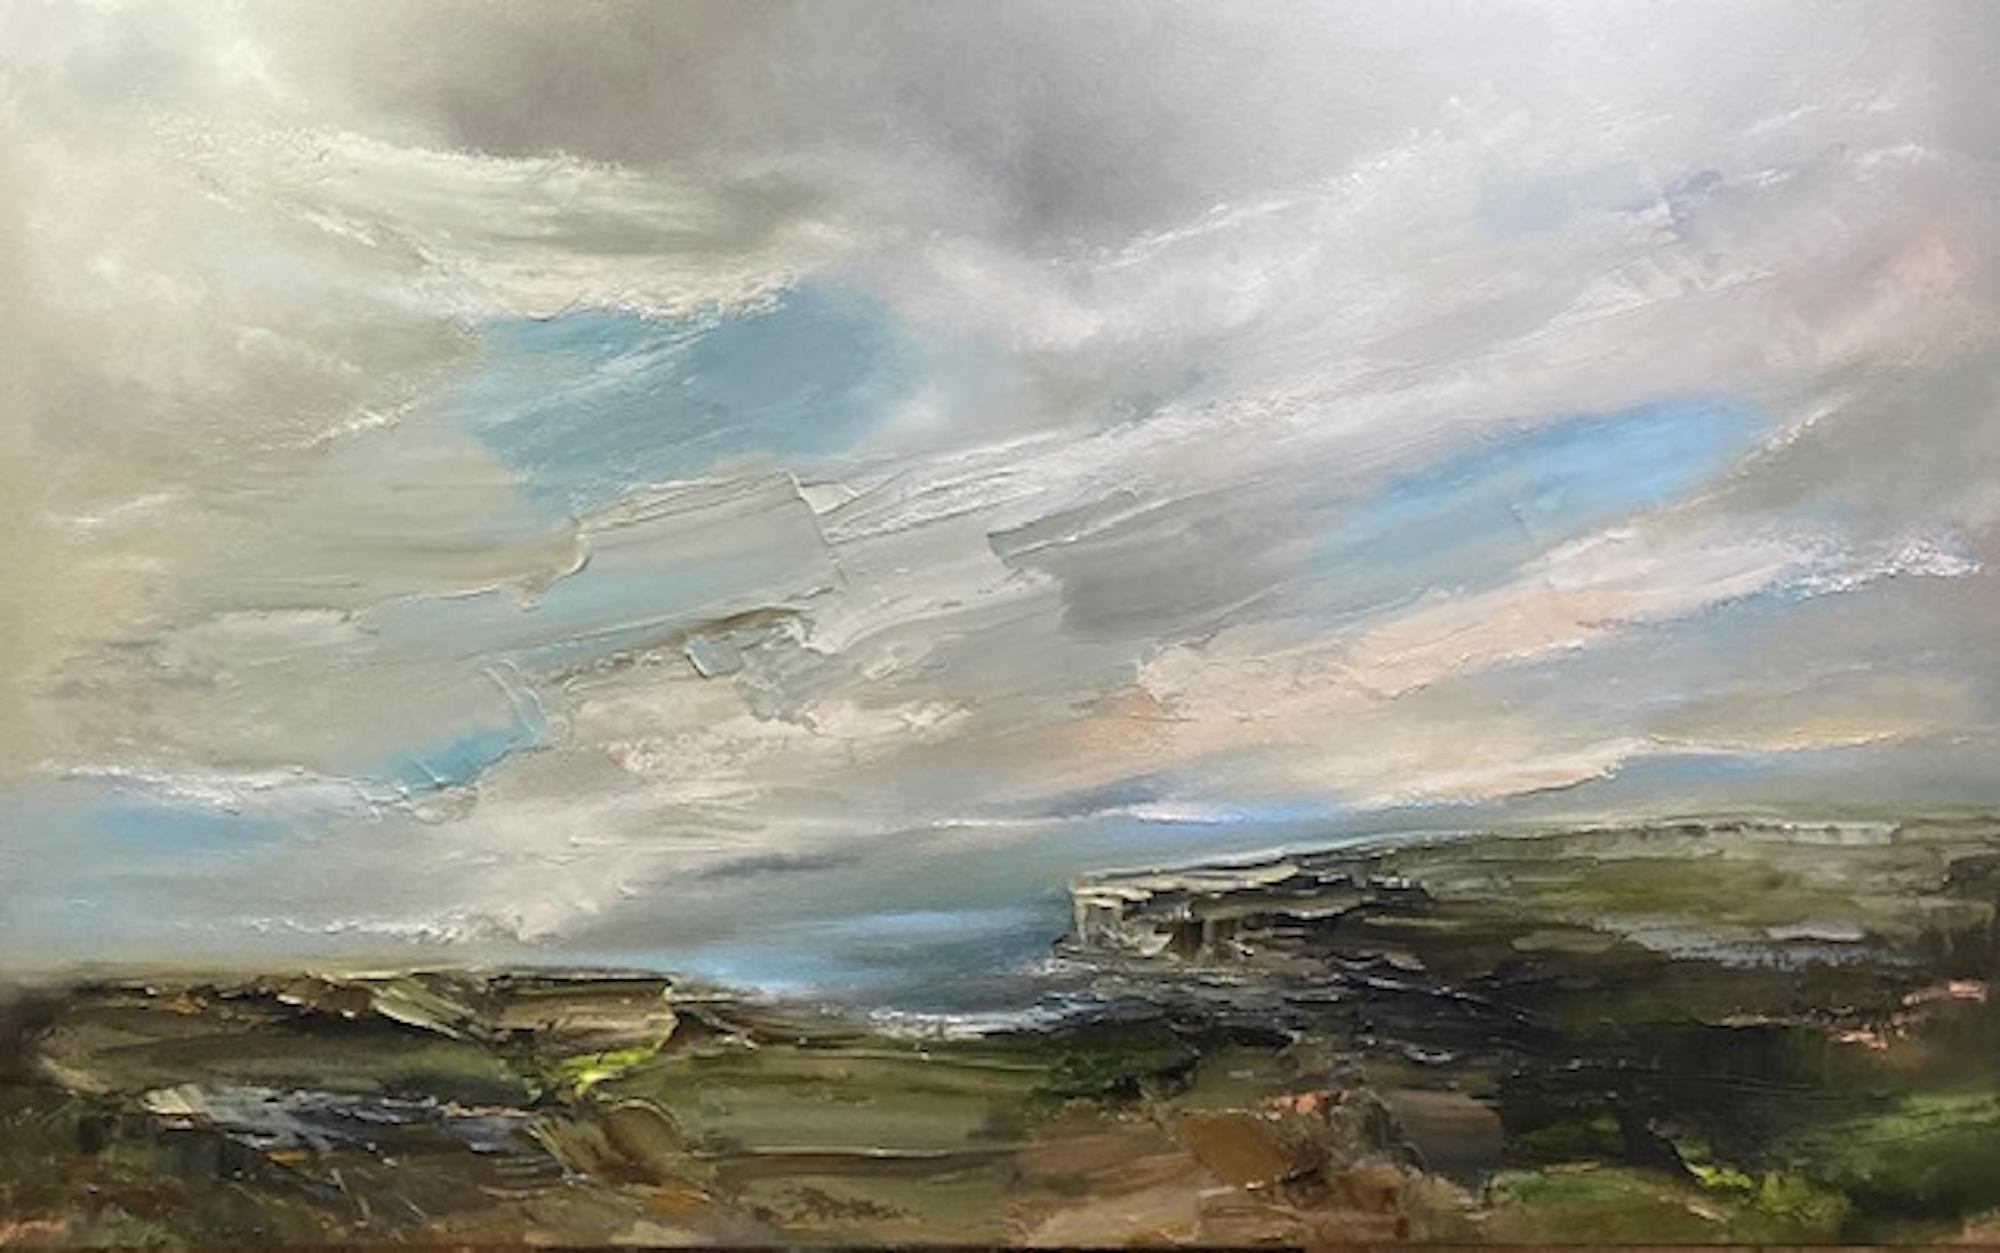 Helen Howells Landscape Painting – Cliff Top Walk, impressionistisches Meereslandschaftsgemälde, Moody South Wales Landschaft